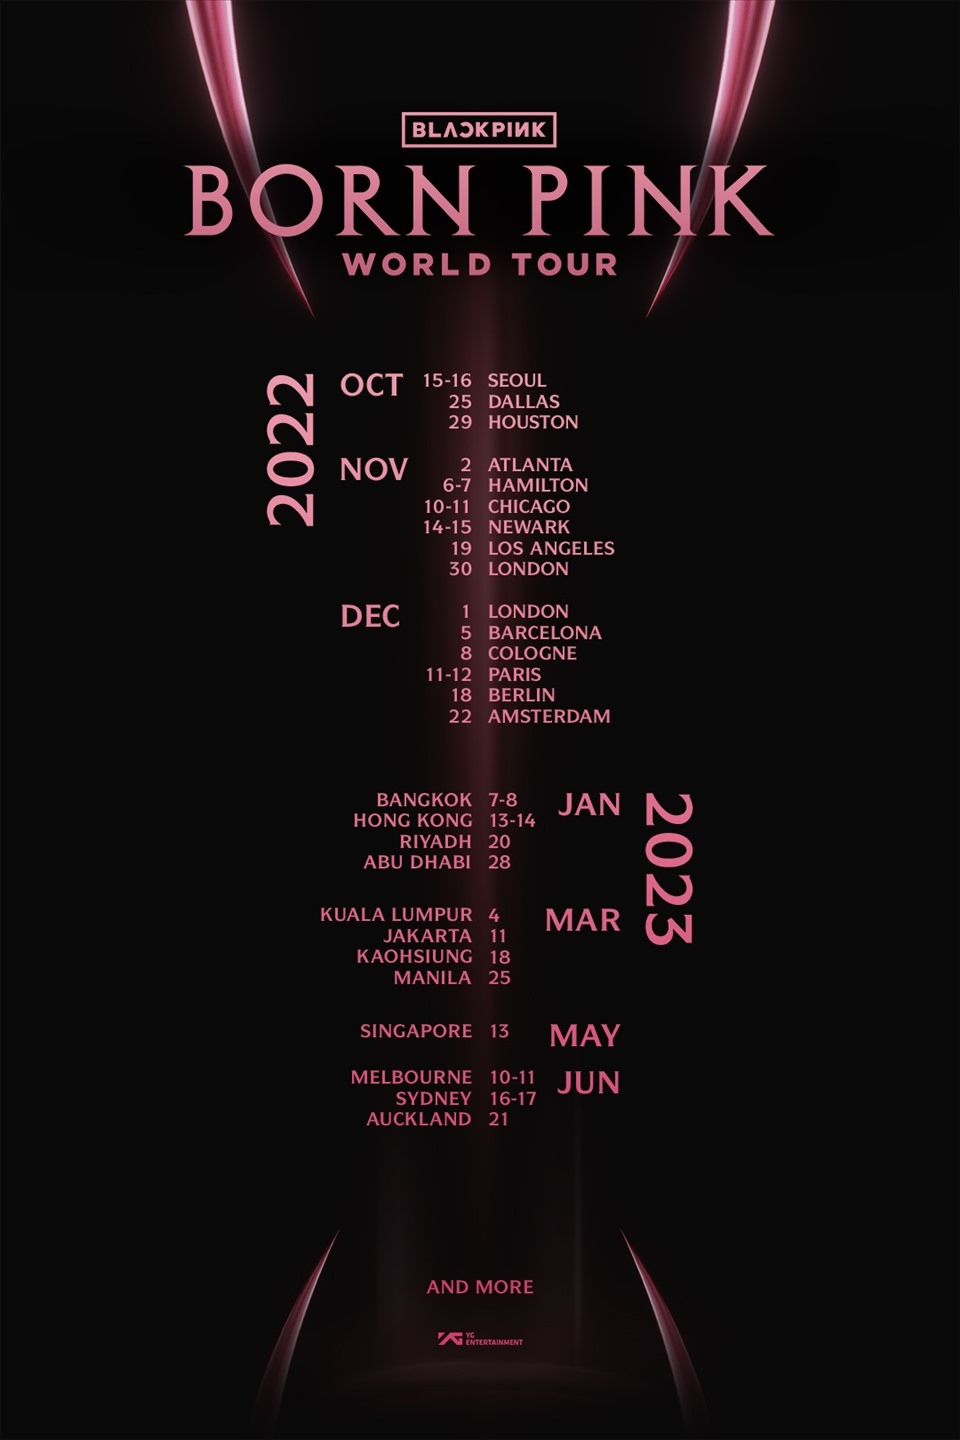 Blackpink công bố lịch trình, địa điểm world tour kéo dài đến giữa năm